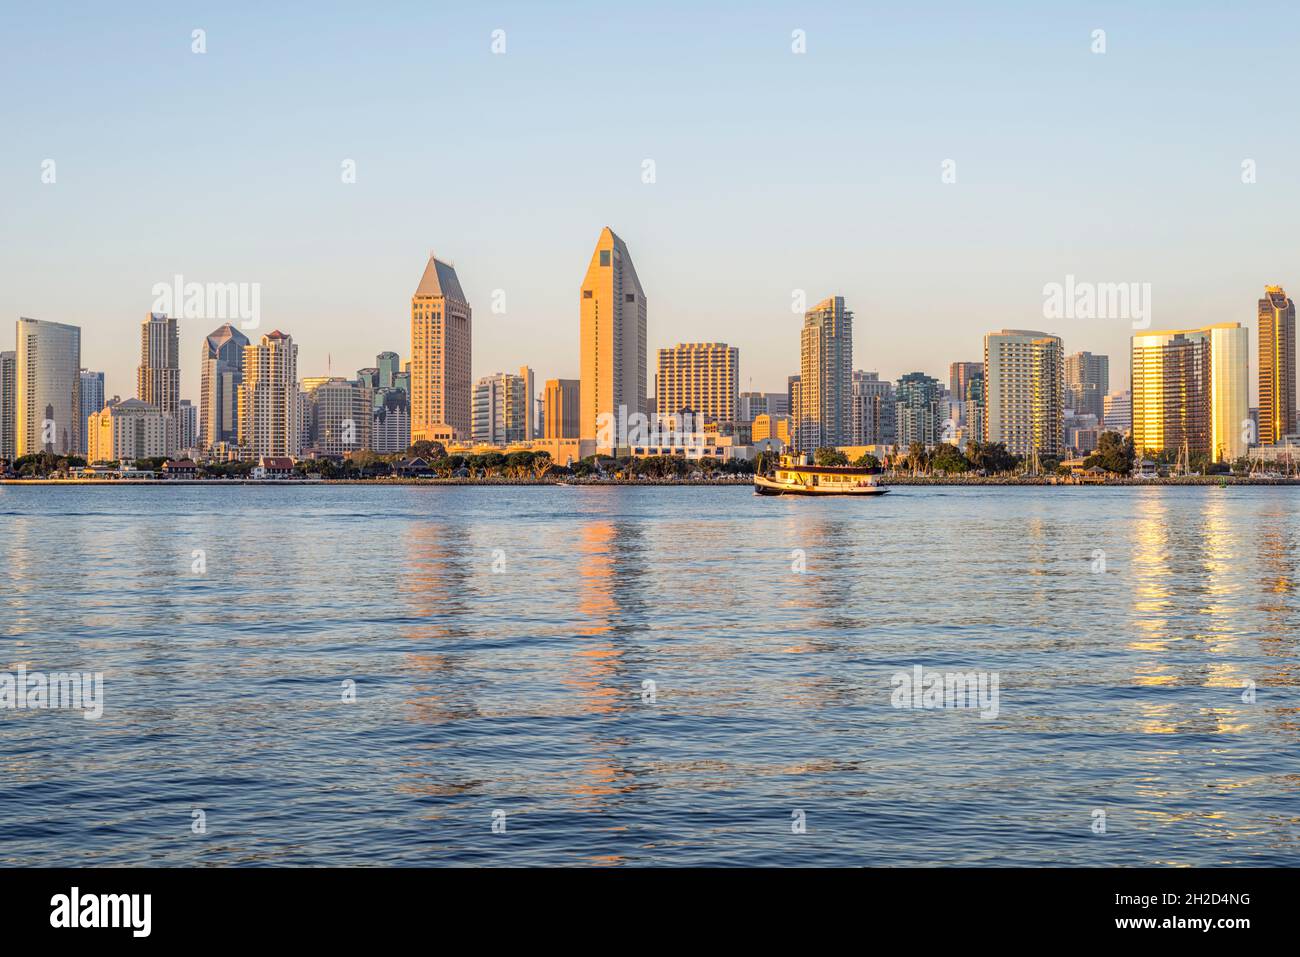 Der Hafen von San Diego und die Skyline von San Diego. Blick von der Stadt Coronado, CA, USA. Stockfoto